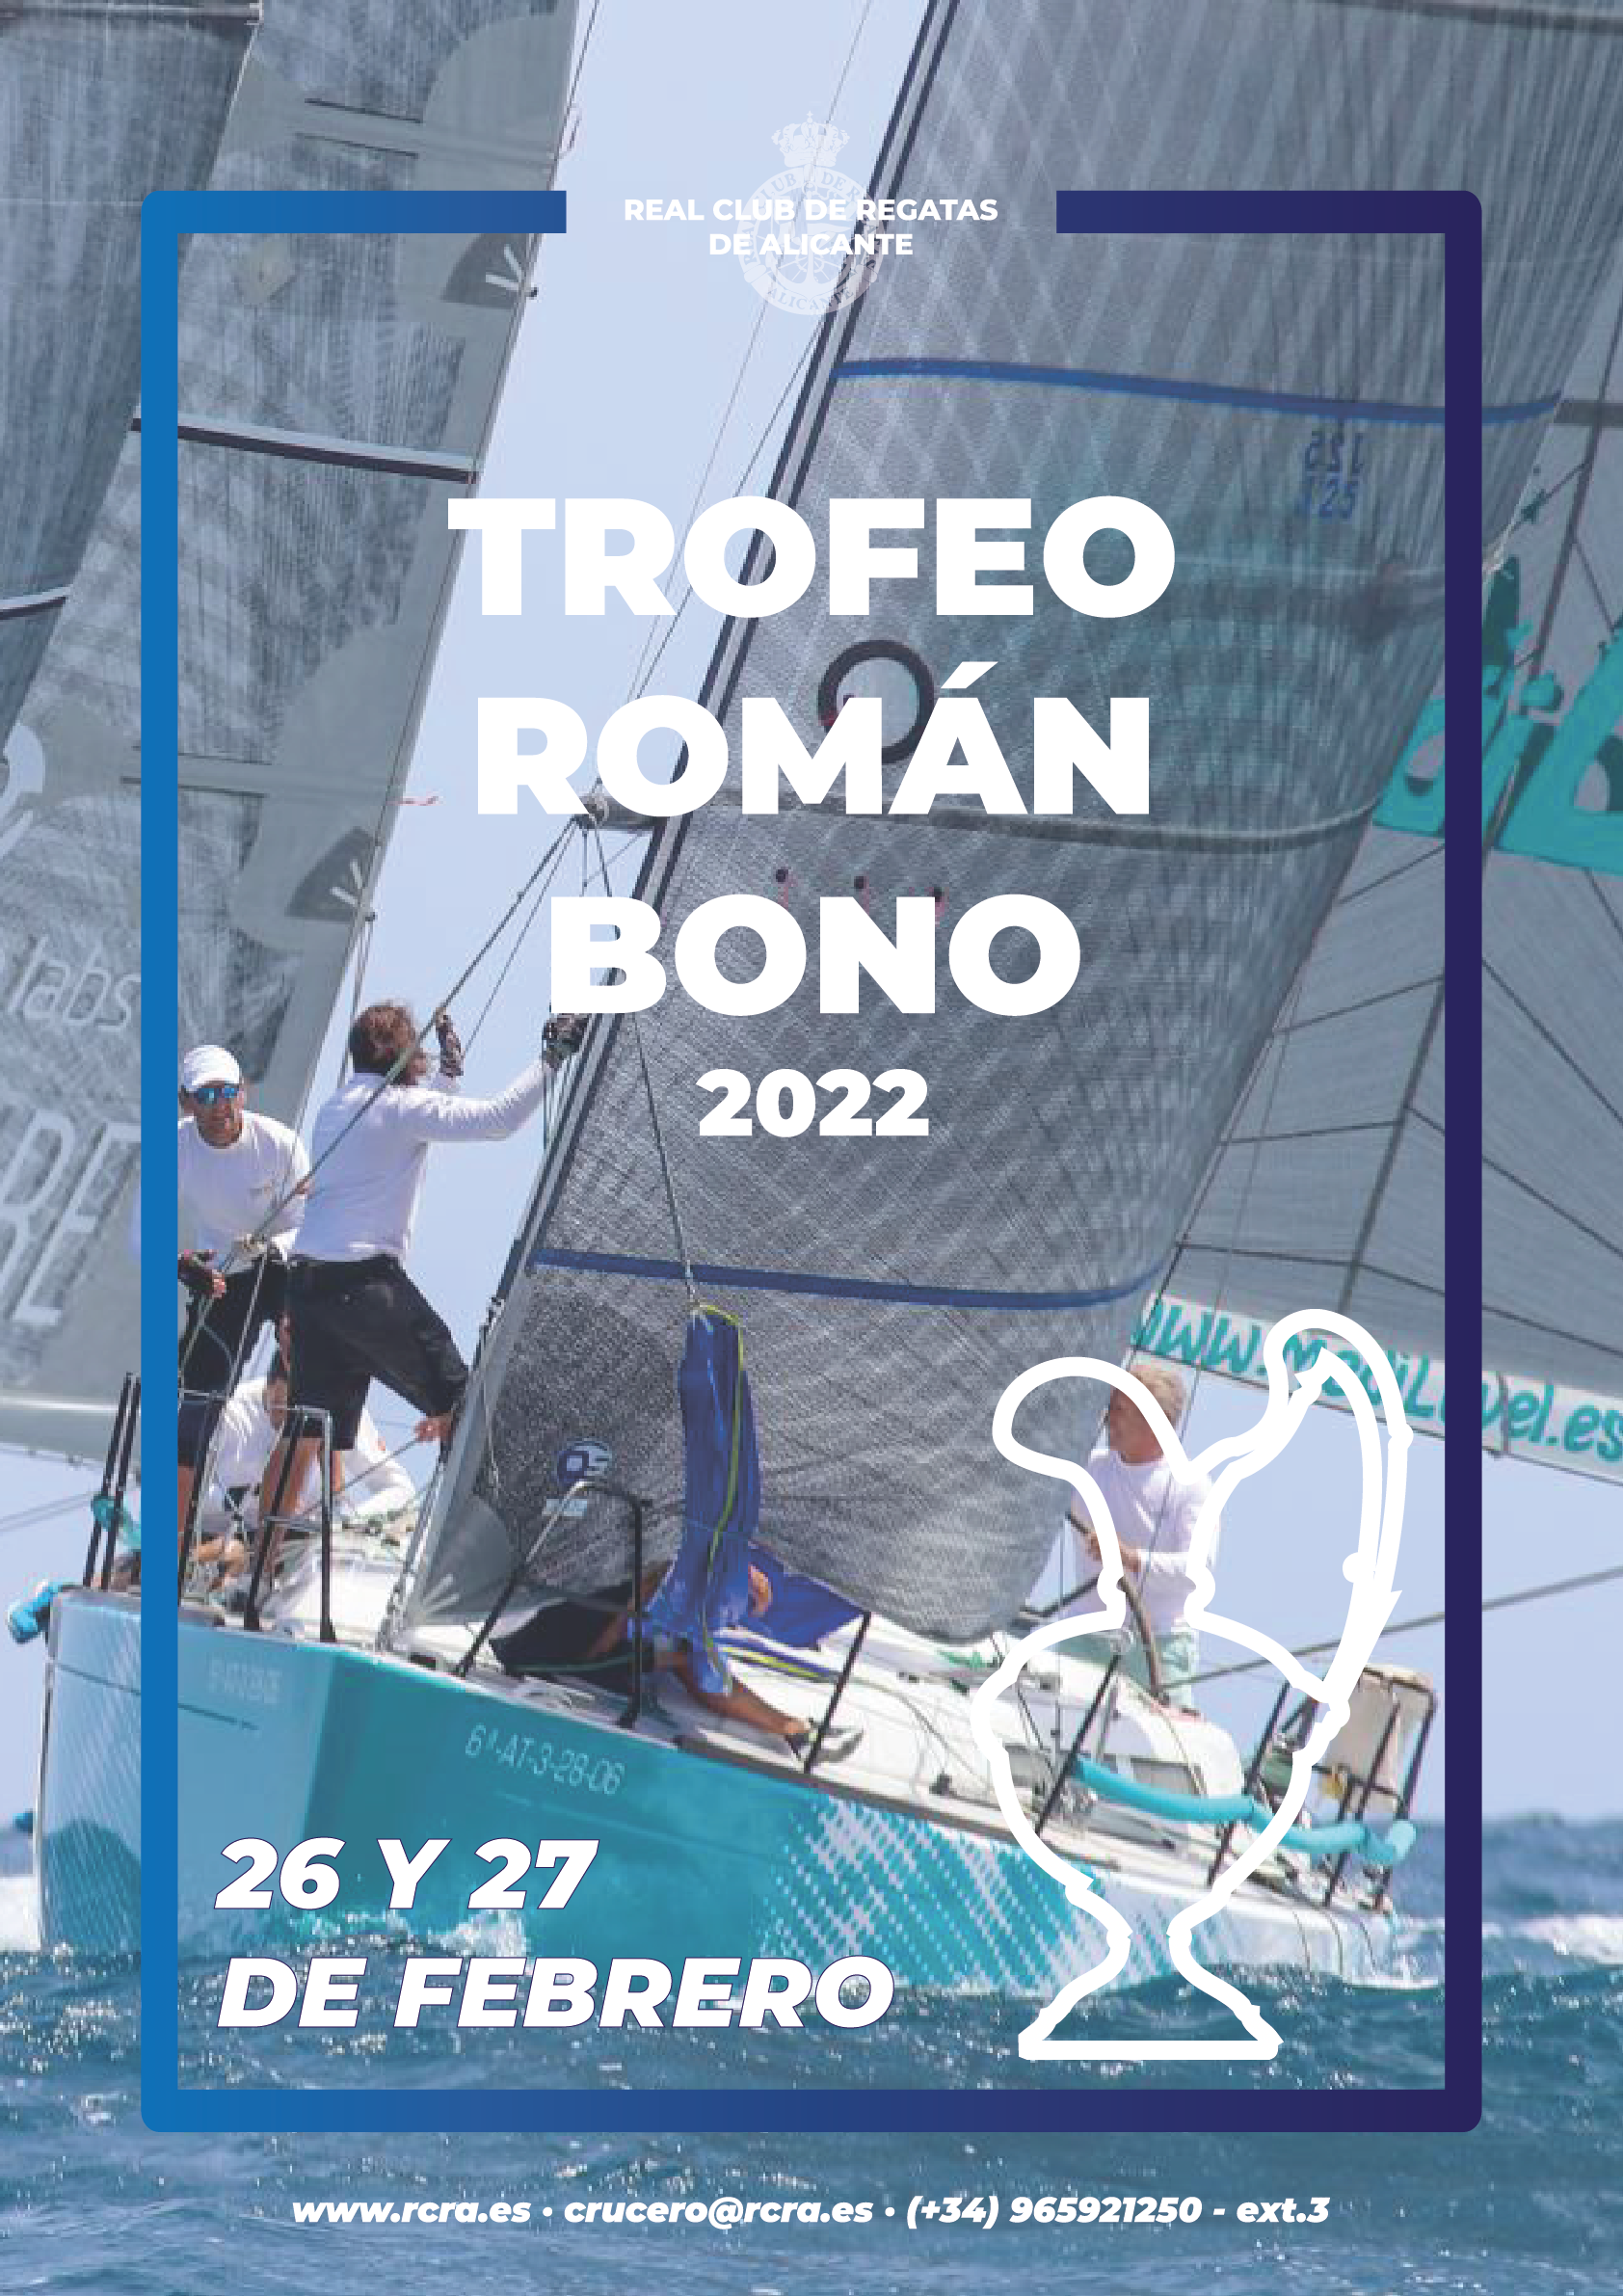 Trofeo Román Bono